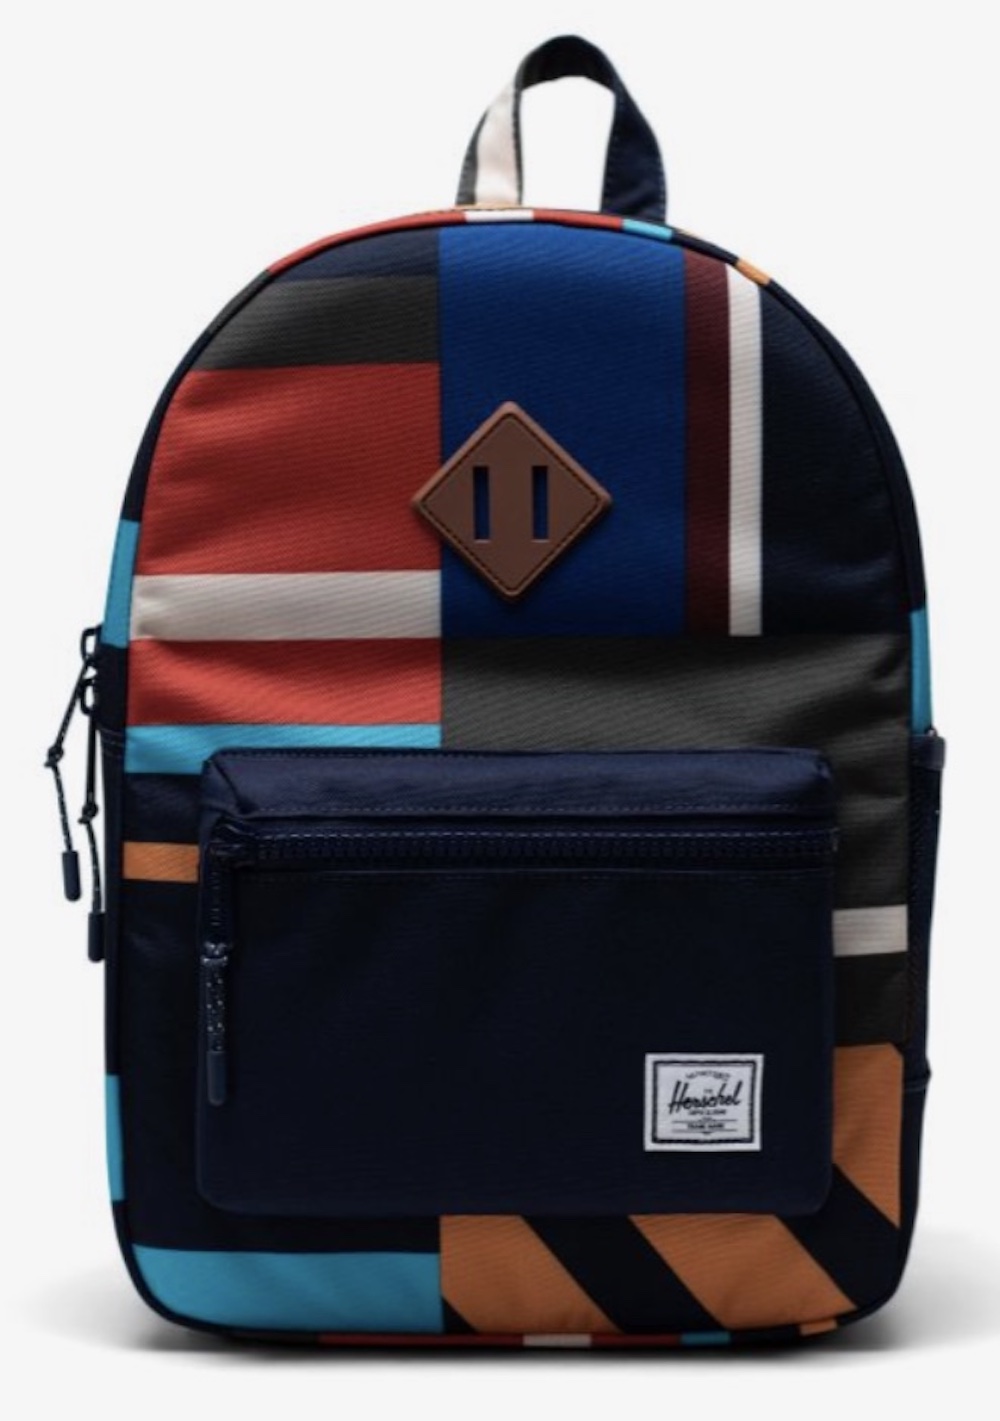 Herschel backpack heritage